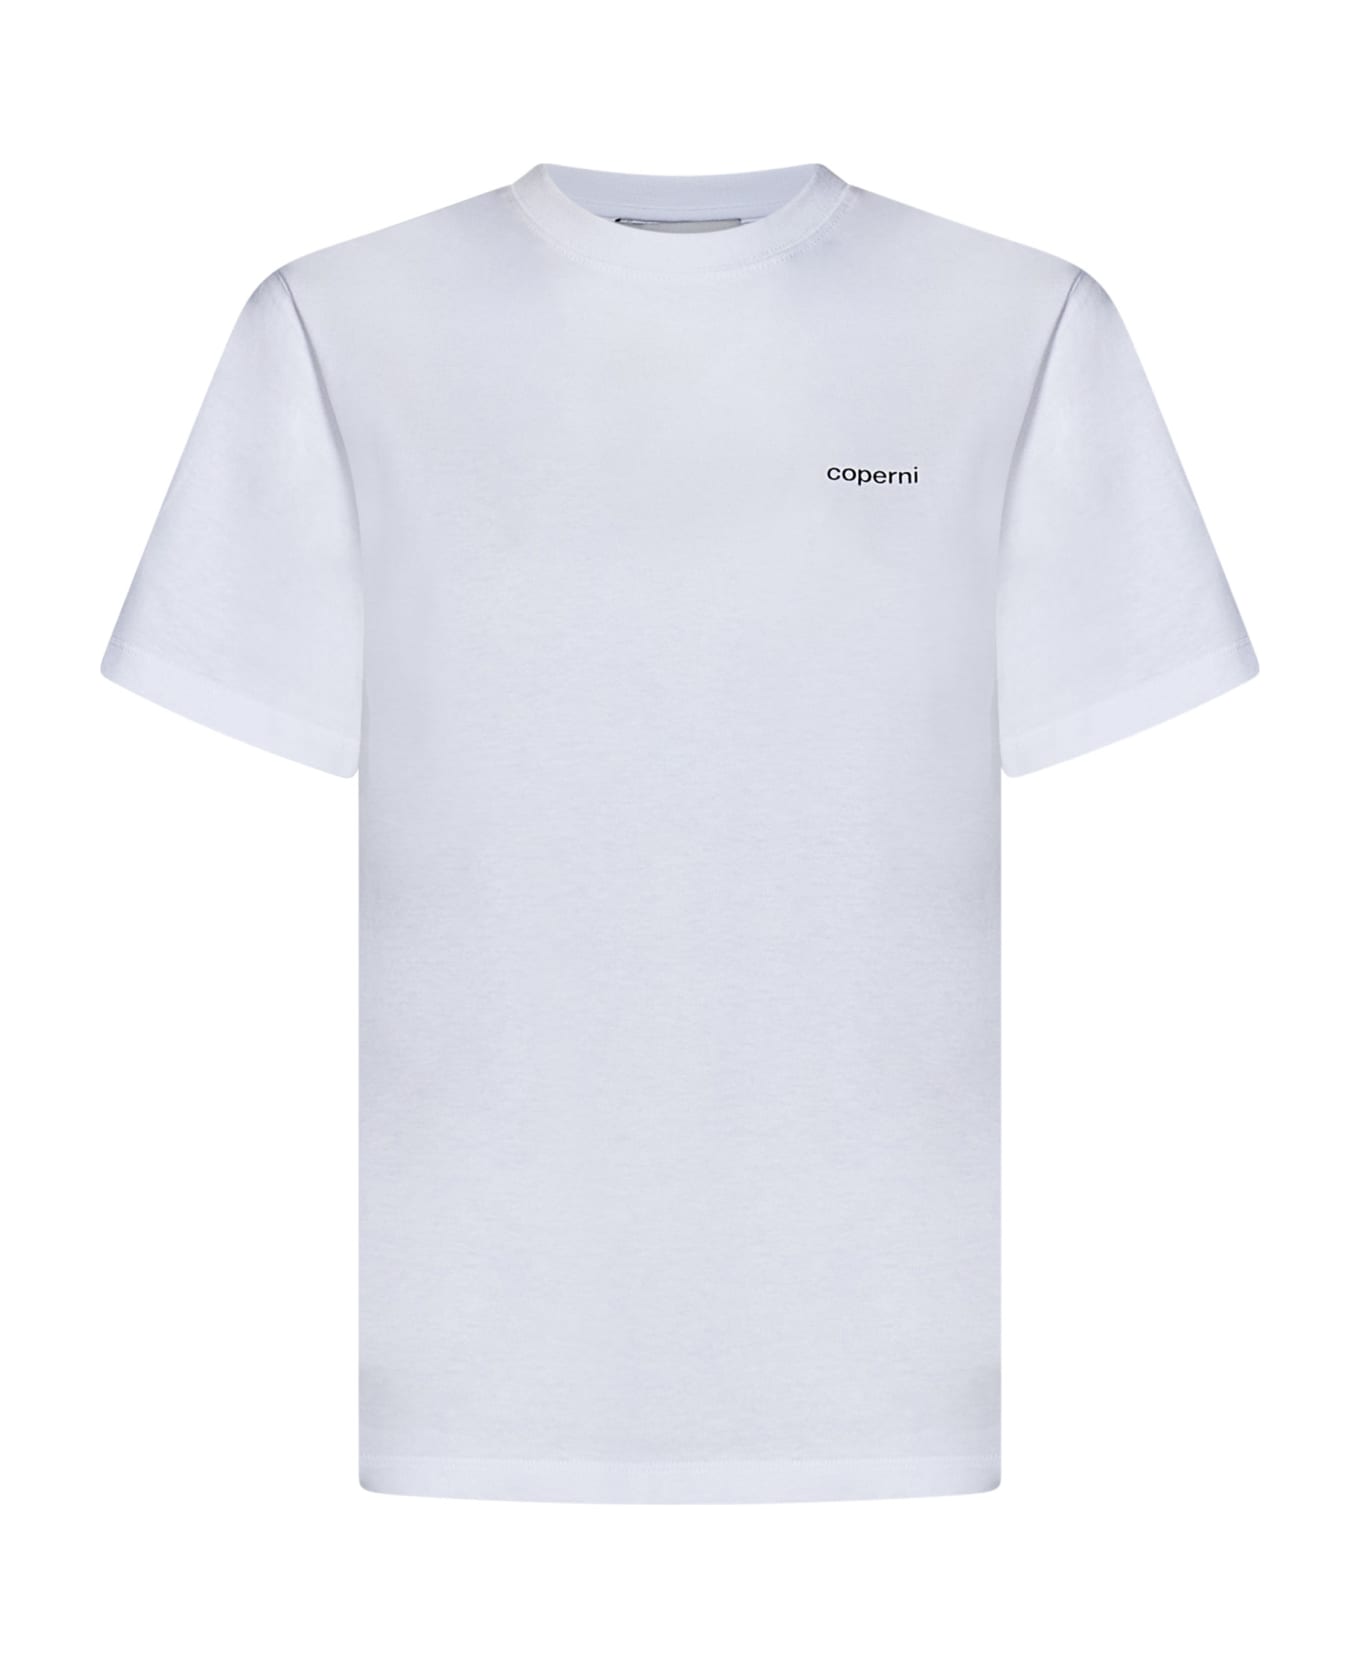 Coperni T-shirt - White Tシャツ